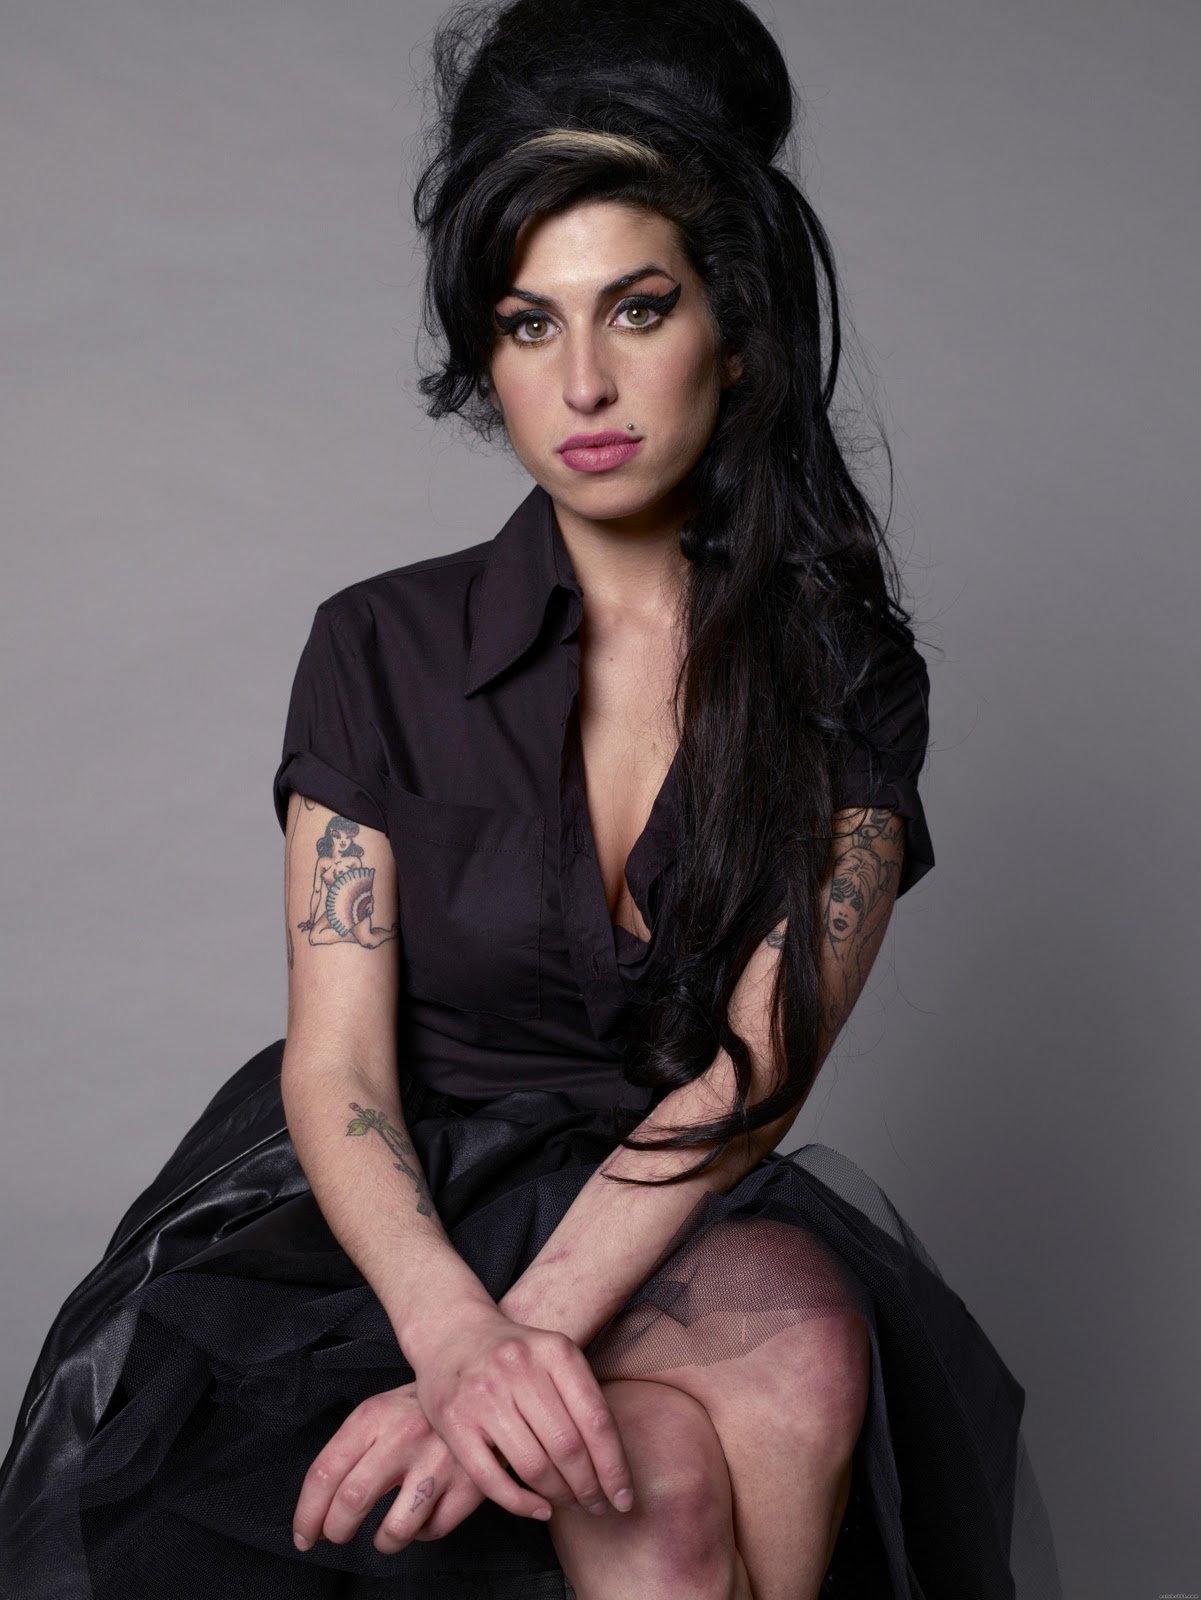 https://blogger.googleusercontent.com/img/b/R29vZ2xl/AVvXsEjCTKtcmsohJCK3ESziEFW_r2GPgqWnhv0461GWh45HitmnNVPXzN3bsxdI1341Z9HyxdELQJdYgtodx3OCctGkkyIglU9OuX0ZDeKYgFgmMPeUvjWMEhf0SmH91TyOpOwWnTcNGWfrTrAH/s1600/Amy_Winehouse_4.jpg